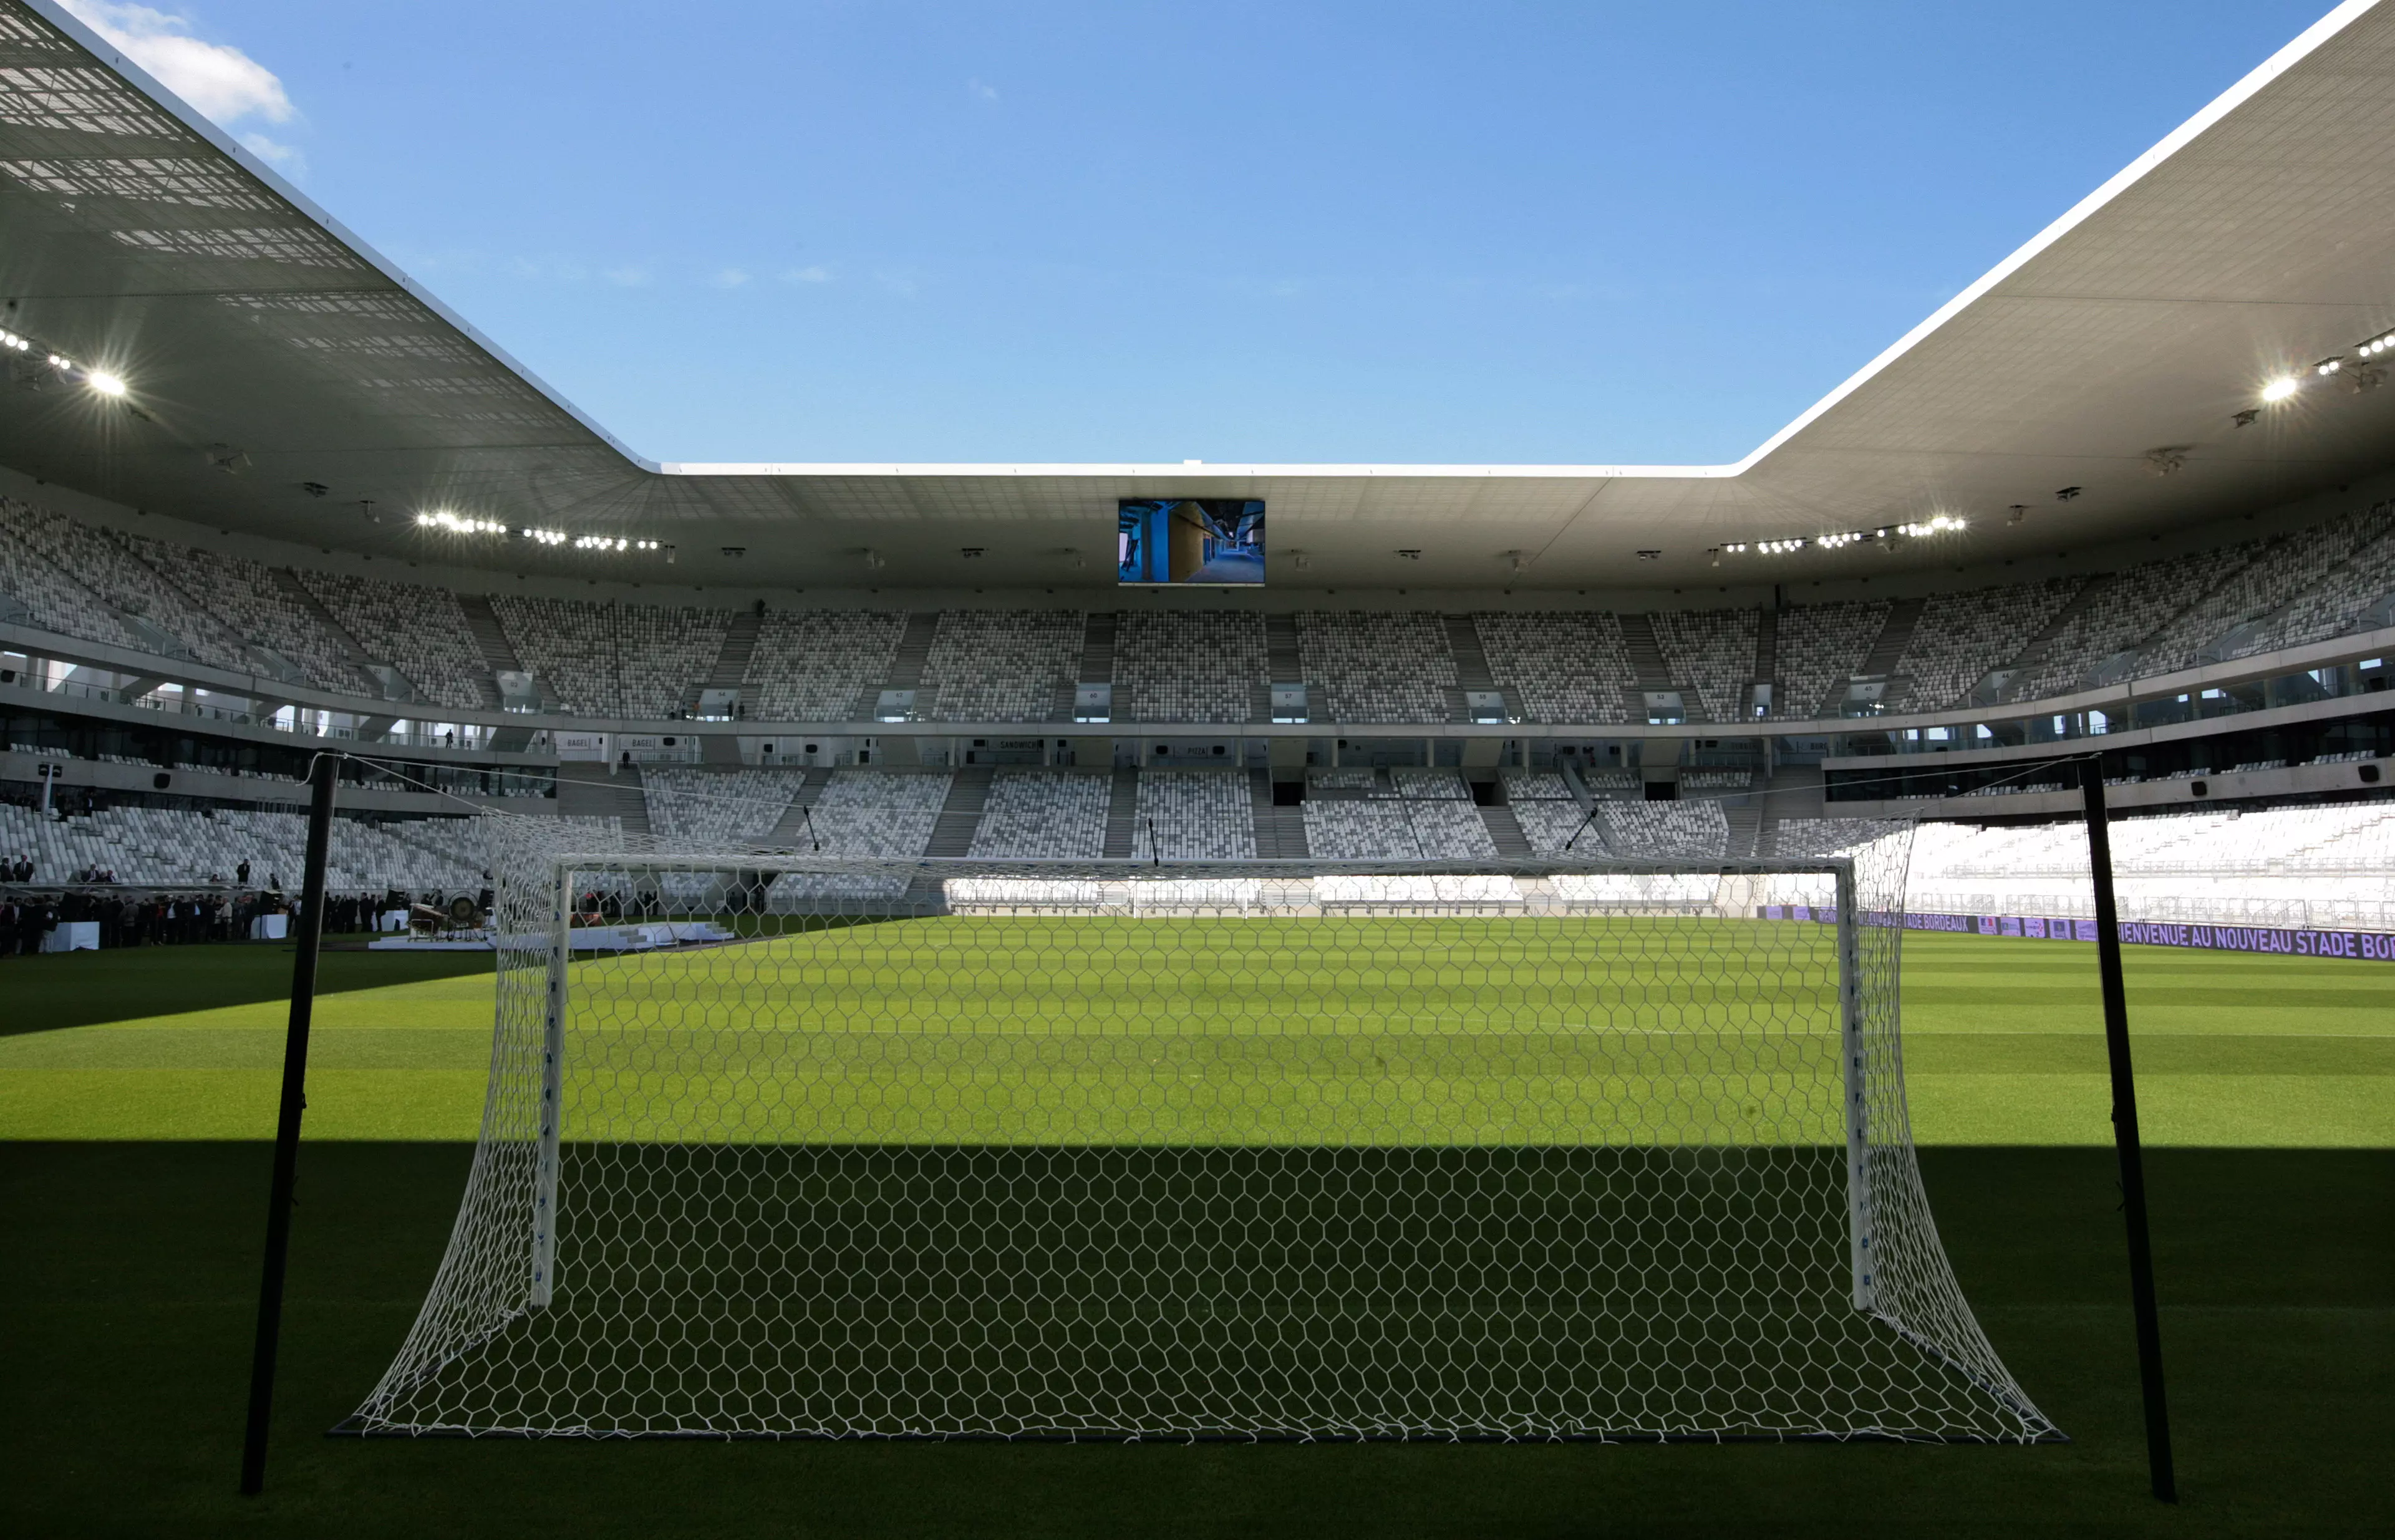 Noveaux Stade de Bordeaux